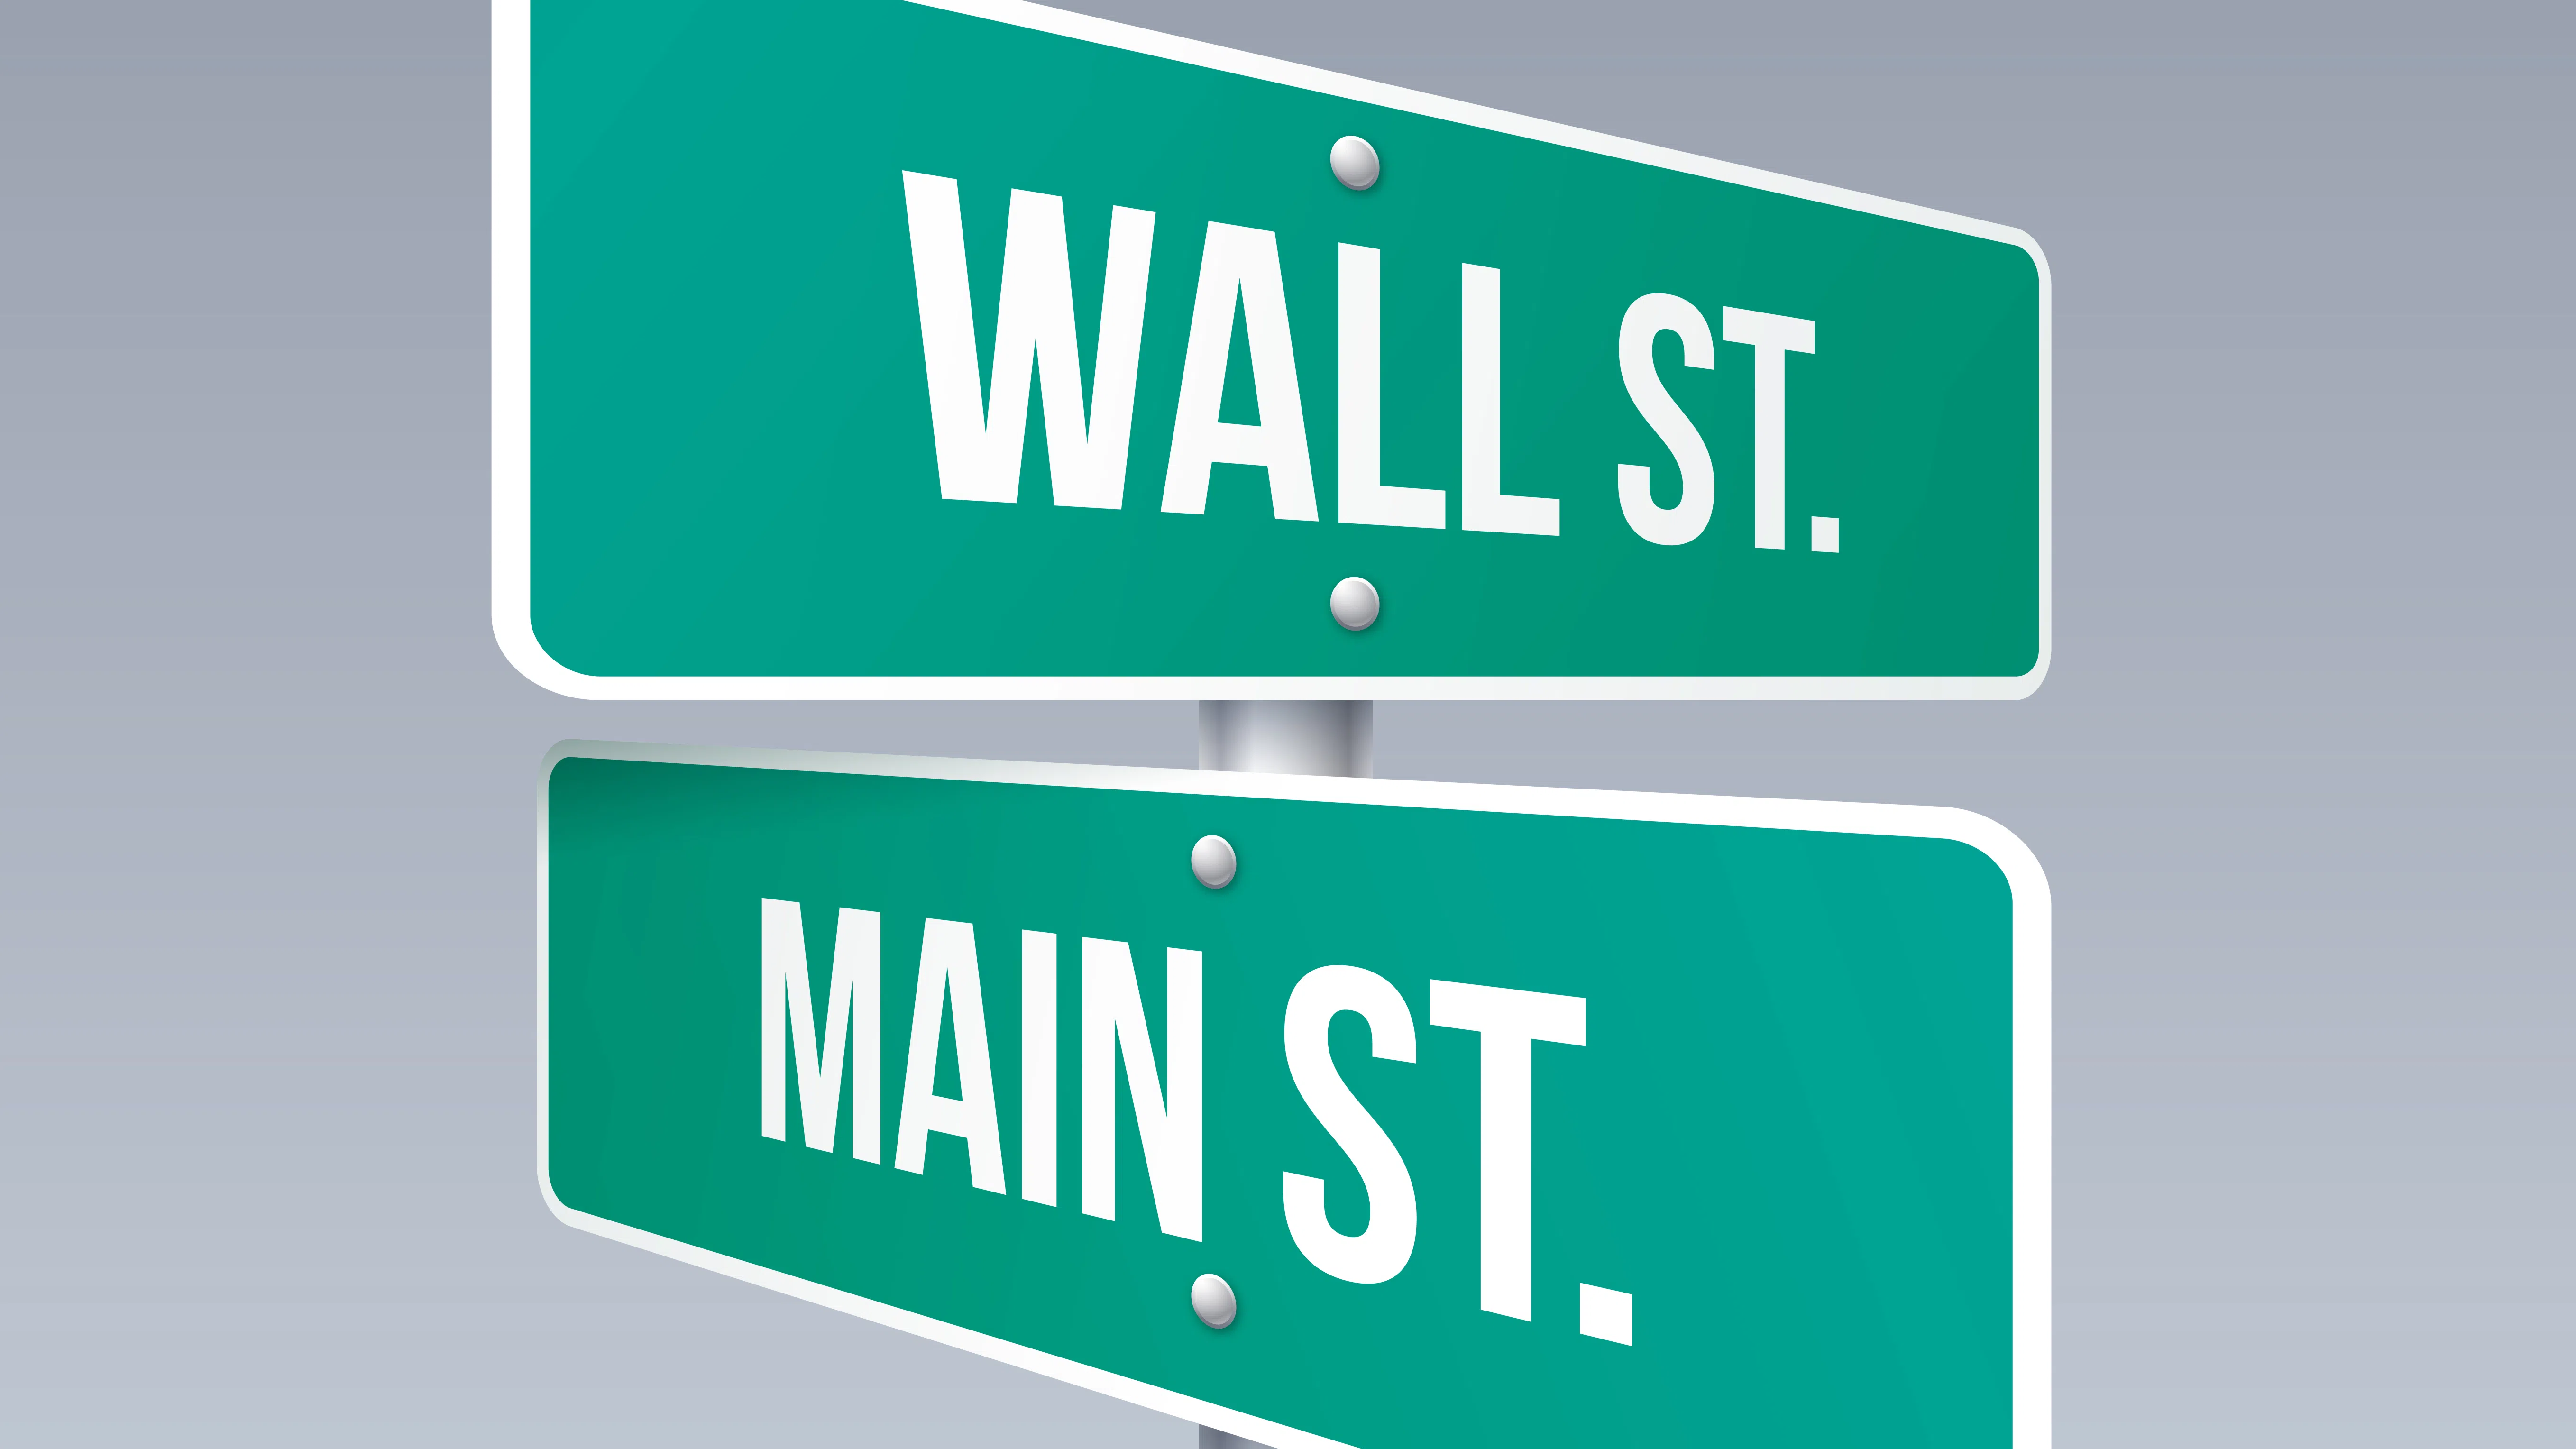 Main Street срещу Wall Street: Състезанието за бъдещето на банките едва започва